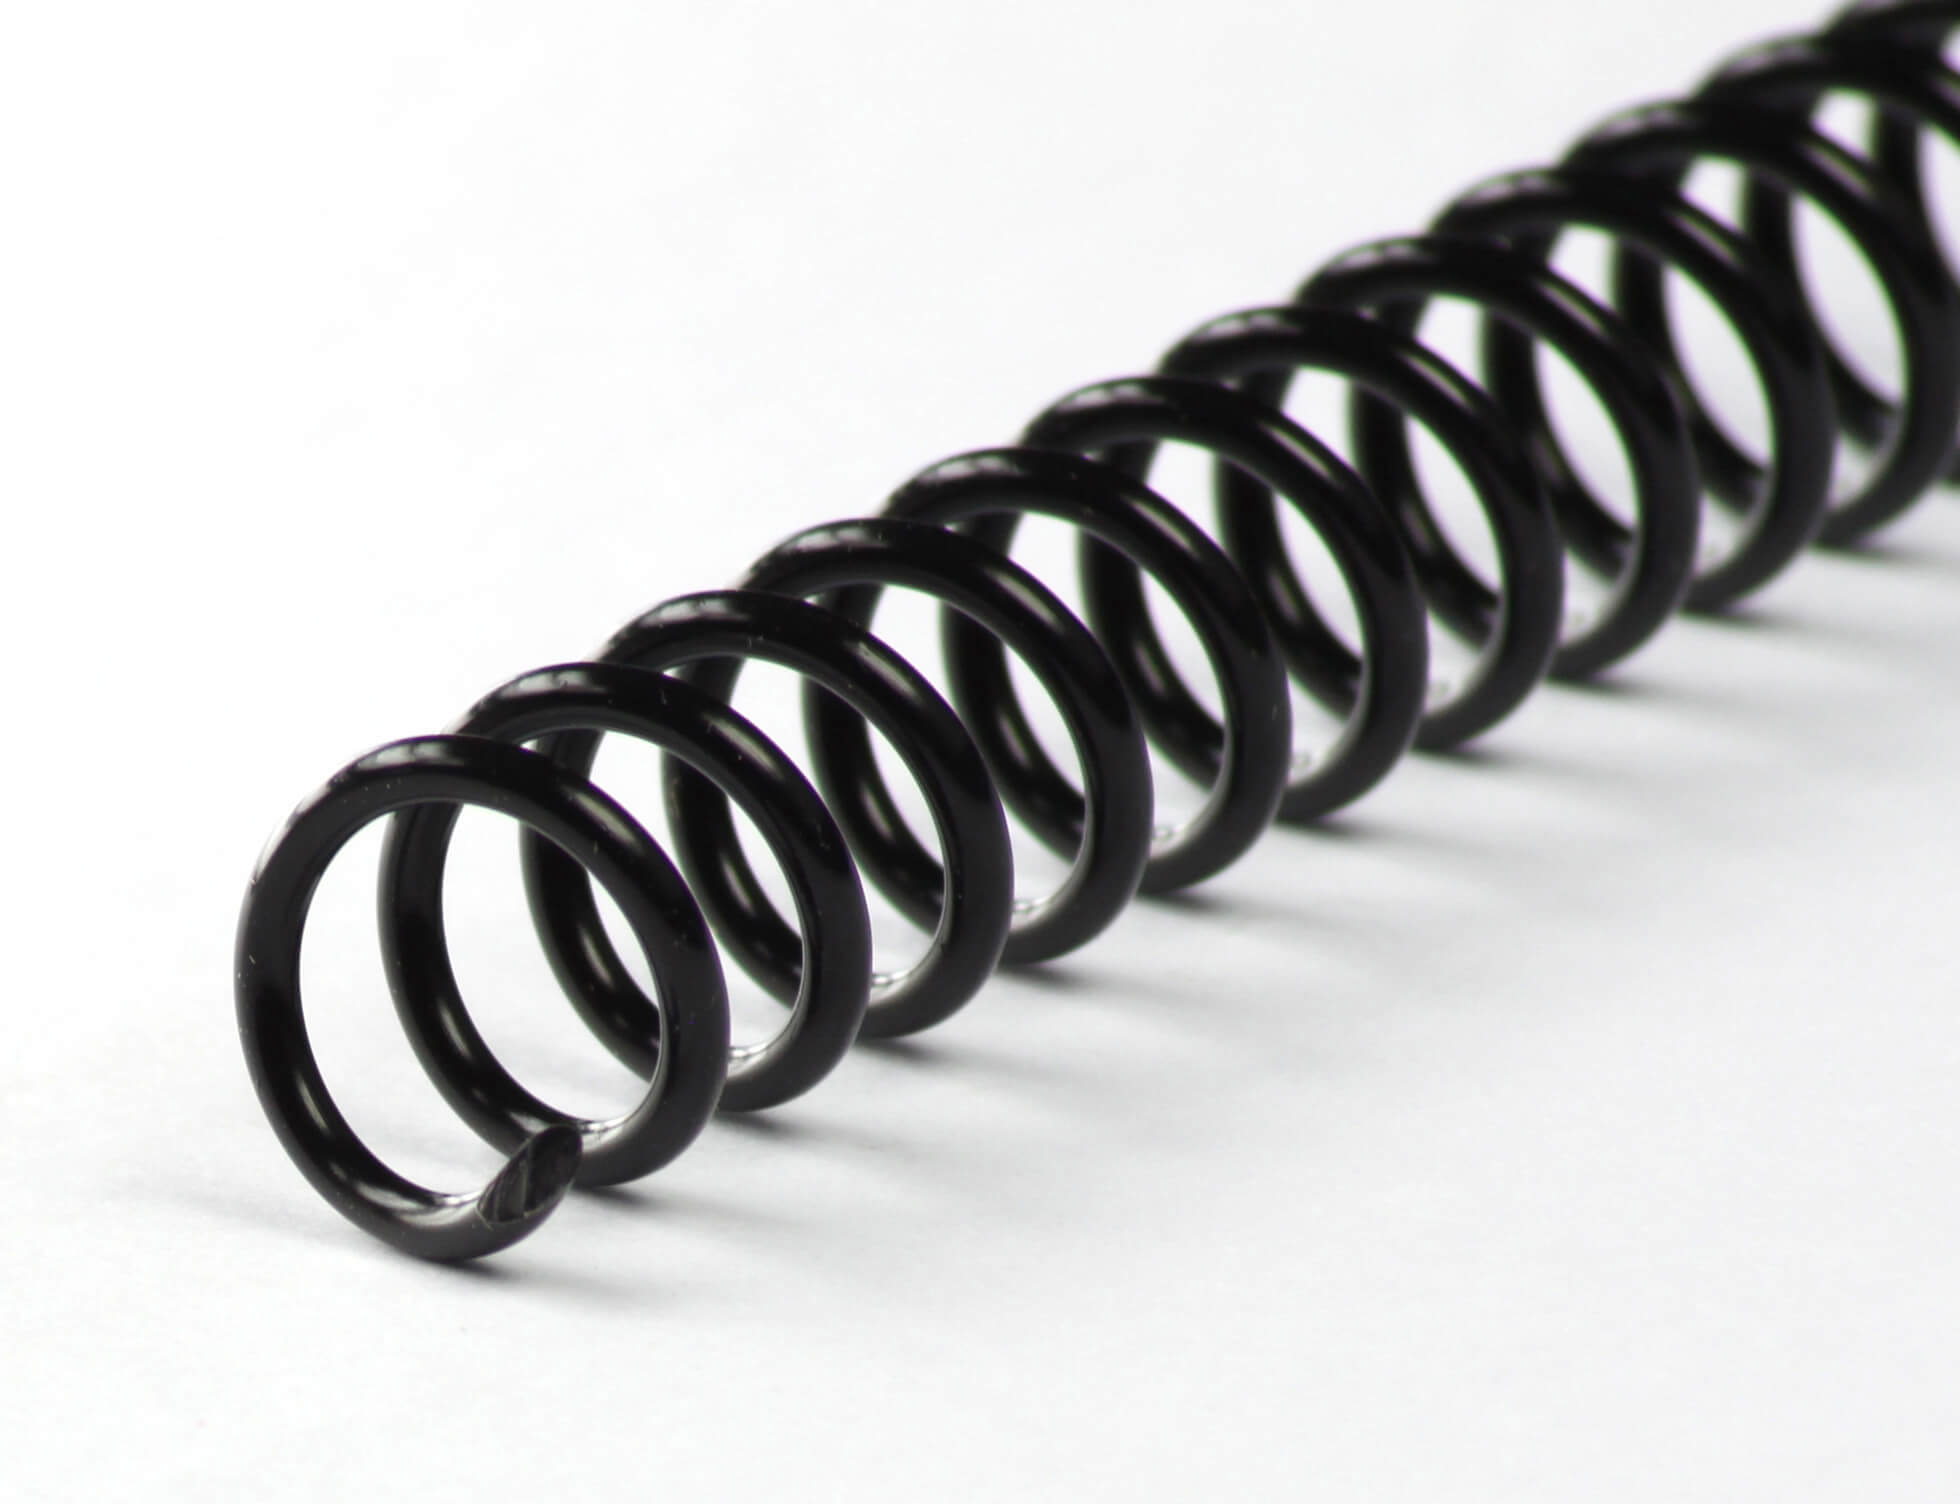 Binderücken CoilBind 47 Ringe 8mm, 4:1 Teilung schwarz | Bestnr. CC08-SW